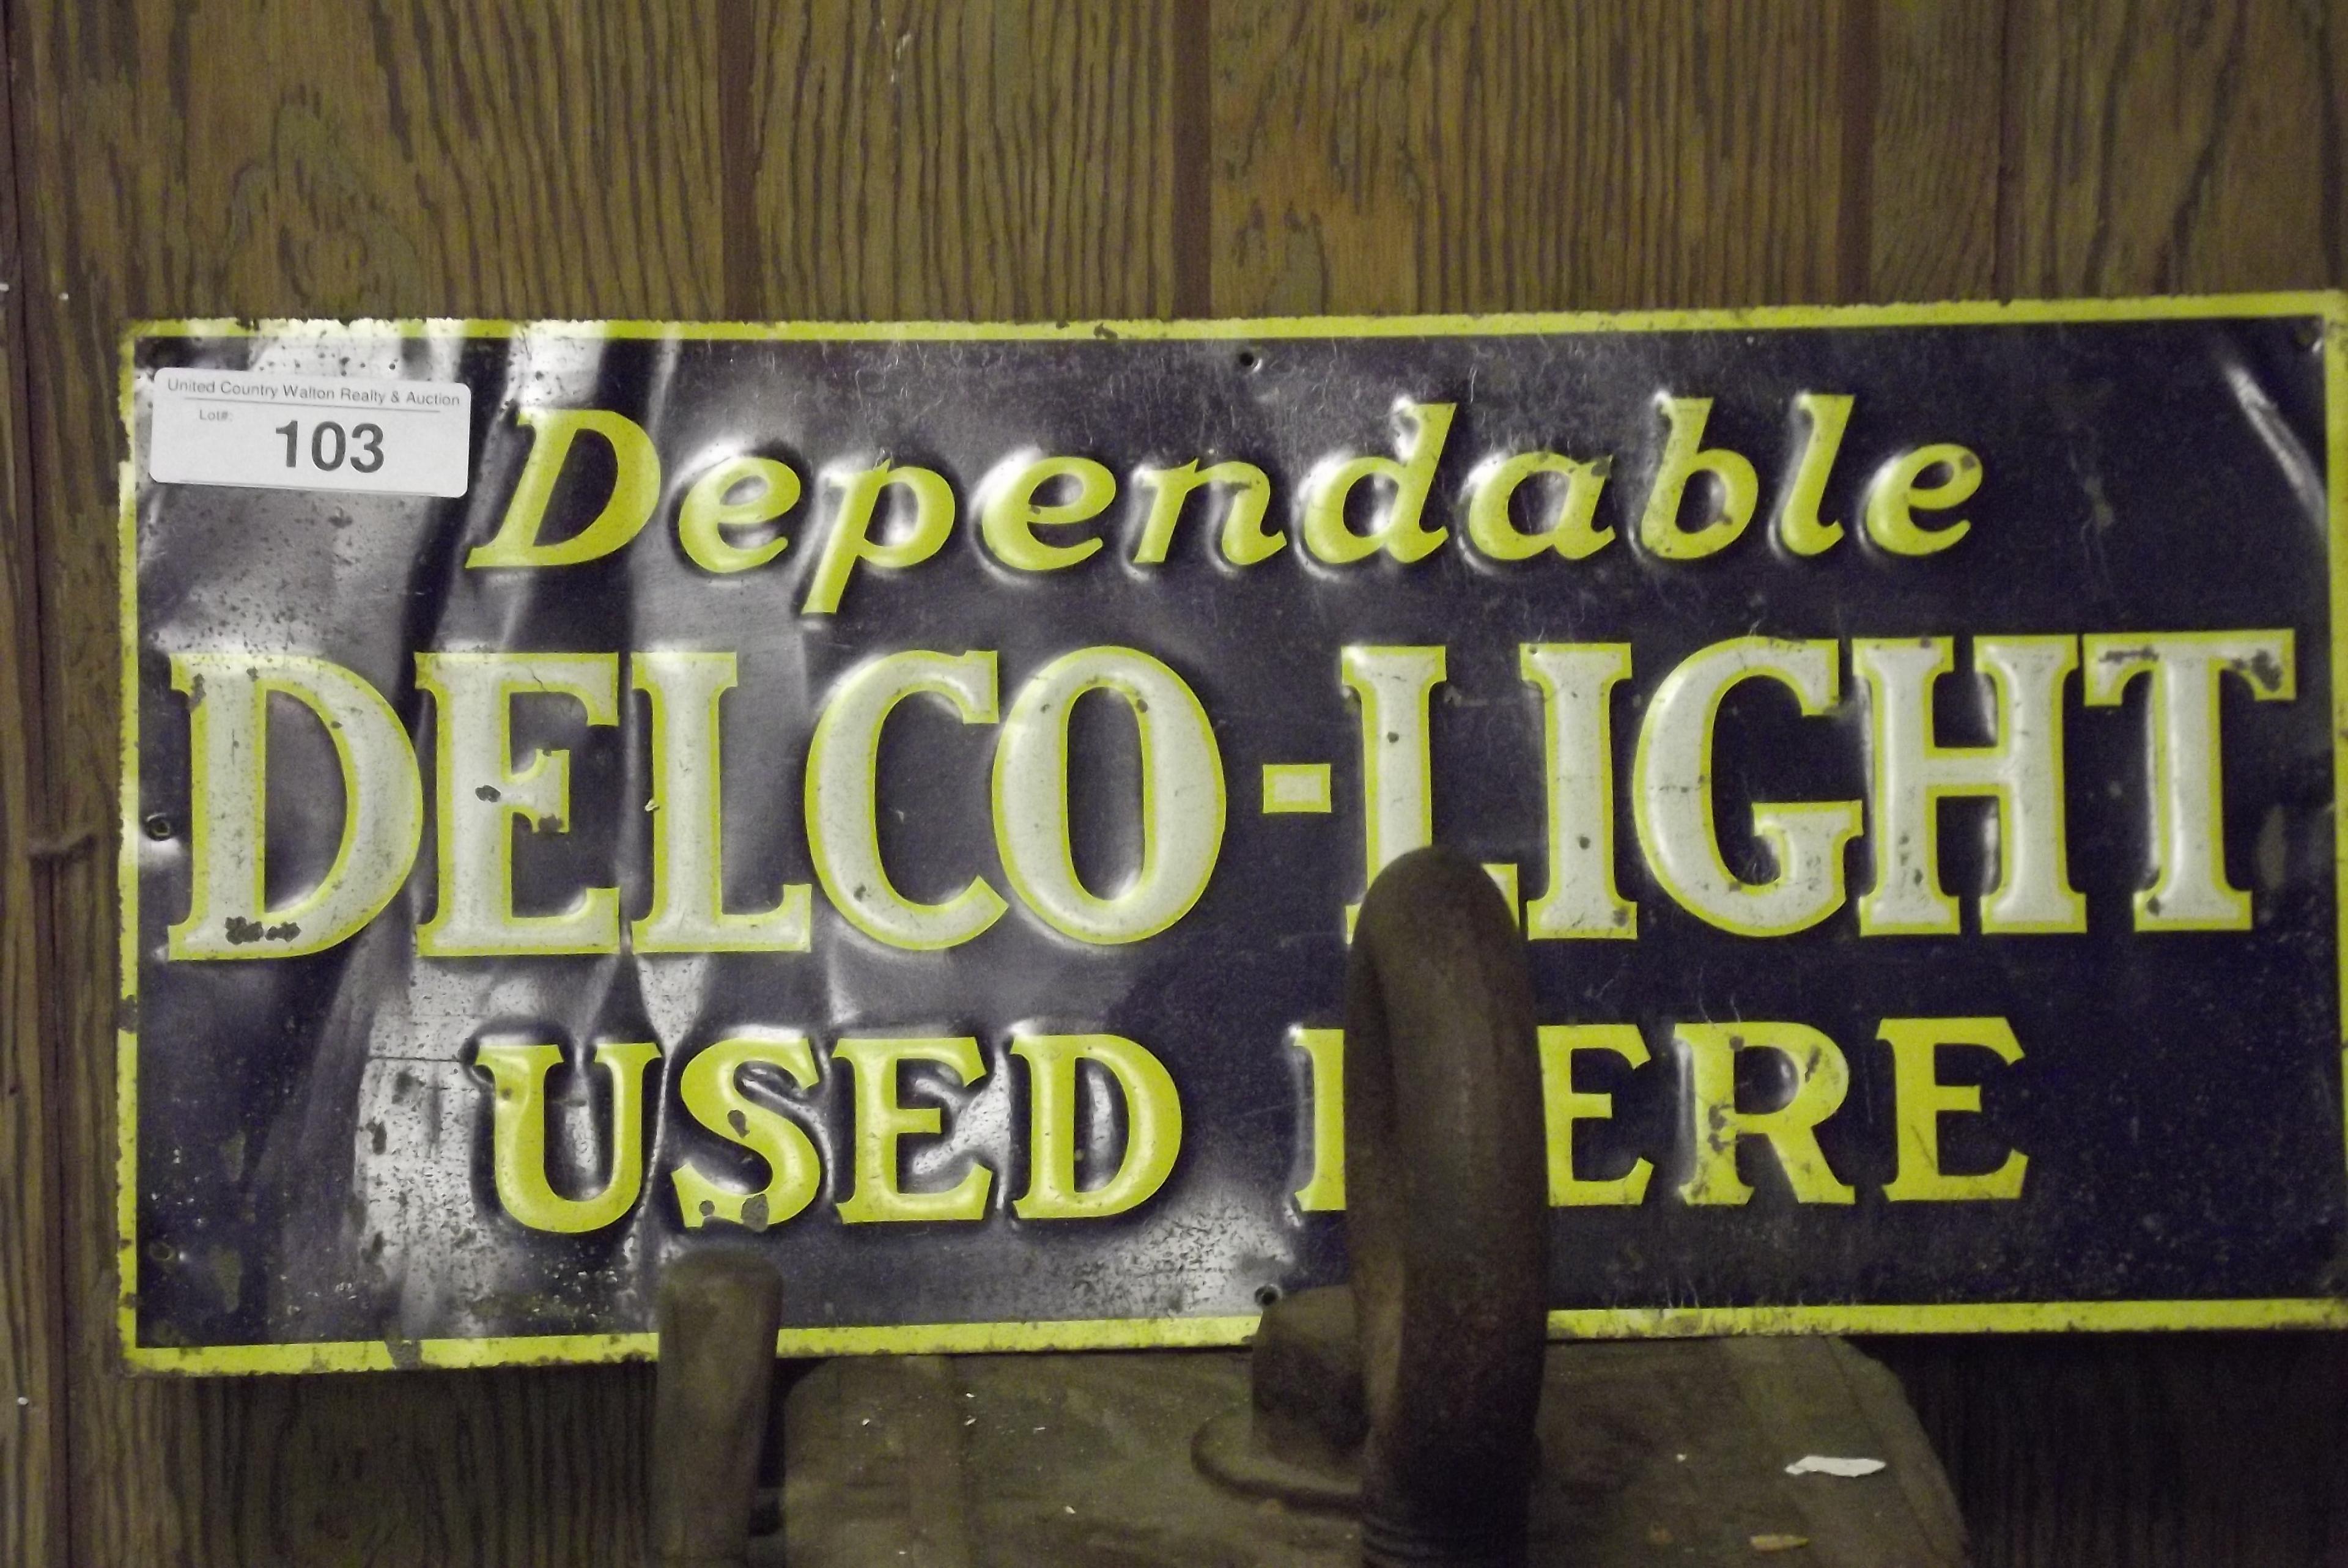 Delco Light Tin Sign